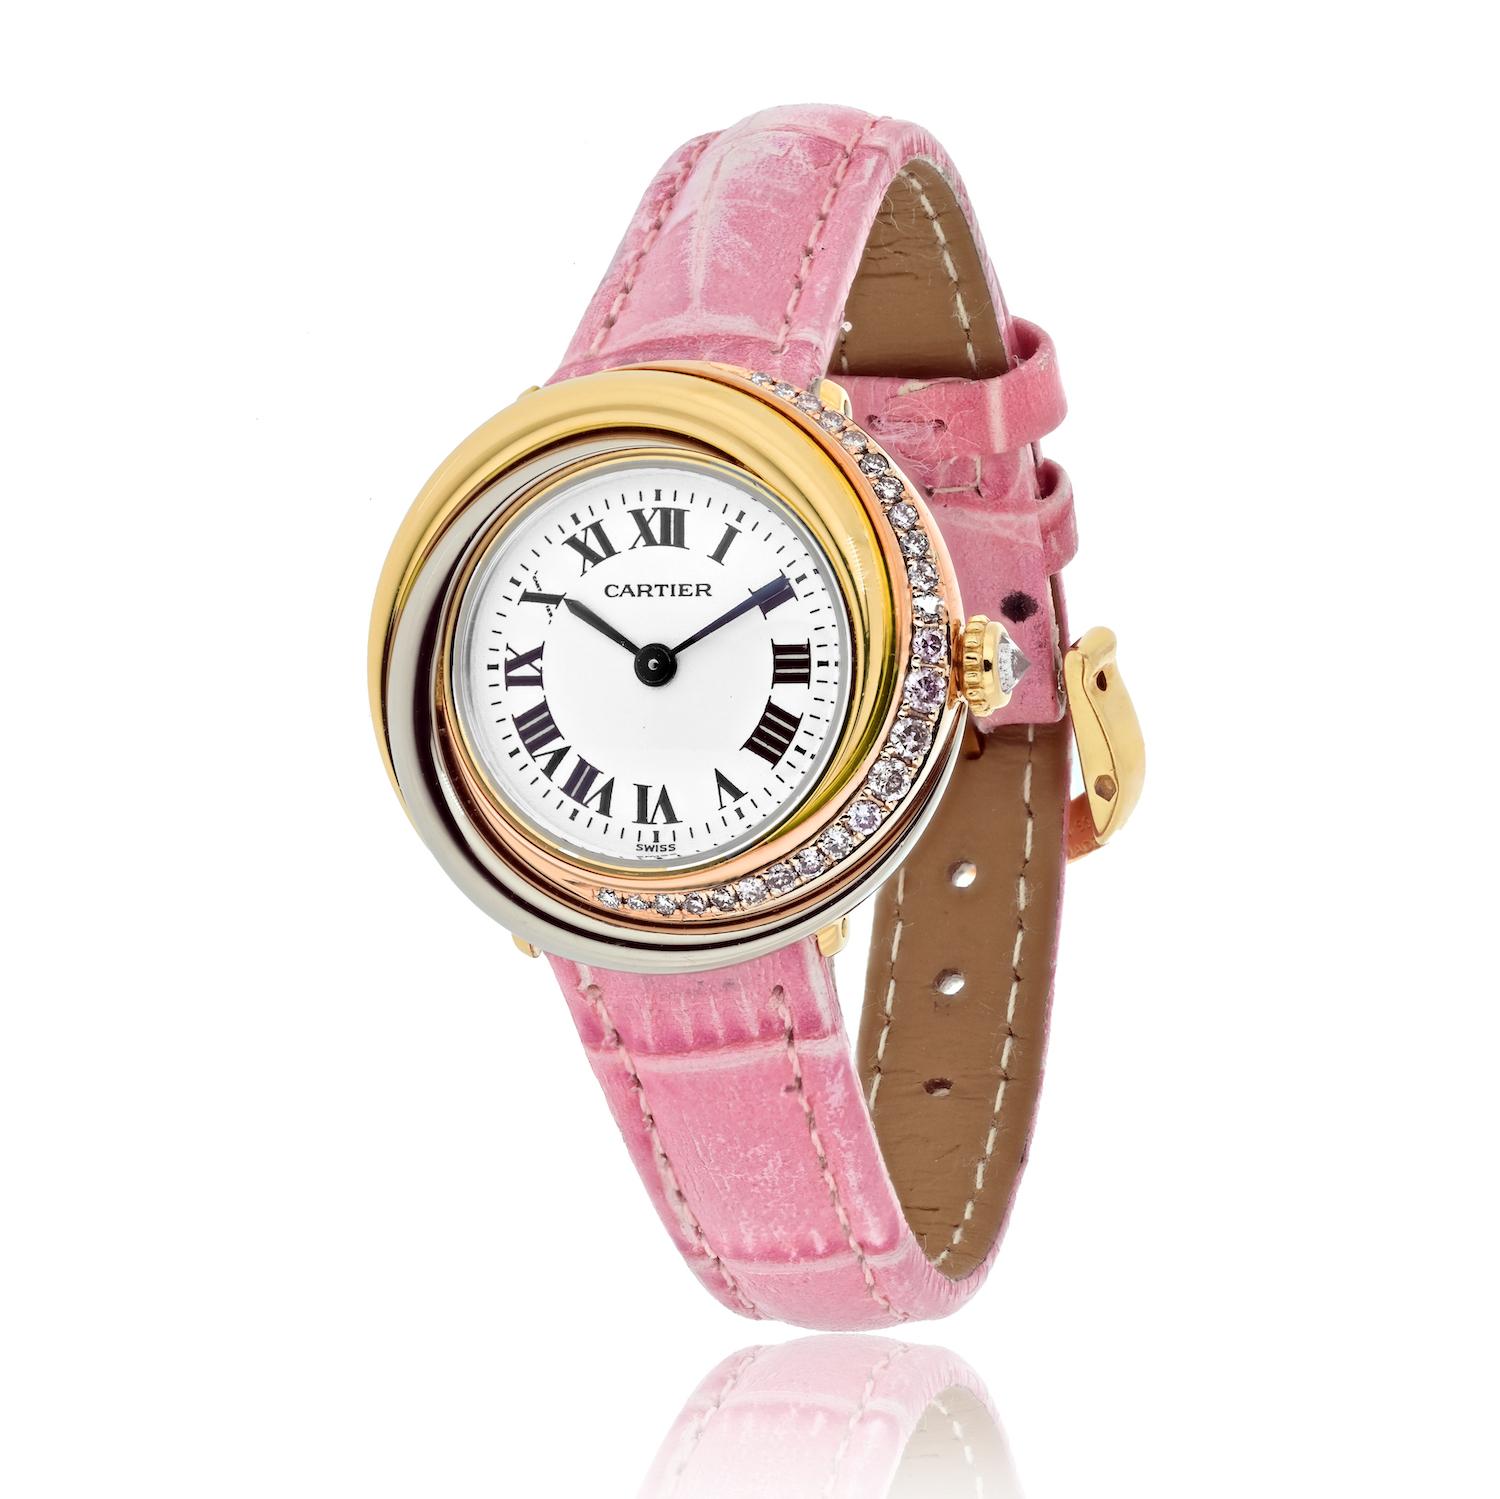 Gönnen Sie sich zeitlose Eleganz mit der Damenuhr Cartier Trinity 2357, einem atemberaubenden Exemplar unserer exquisiten Kollektion von Uhren aus zweiter Hand, die zum Verkauf stehen. Diese Uhr strahlt Glamour und Raffinesse aus und ist damit die